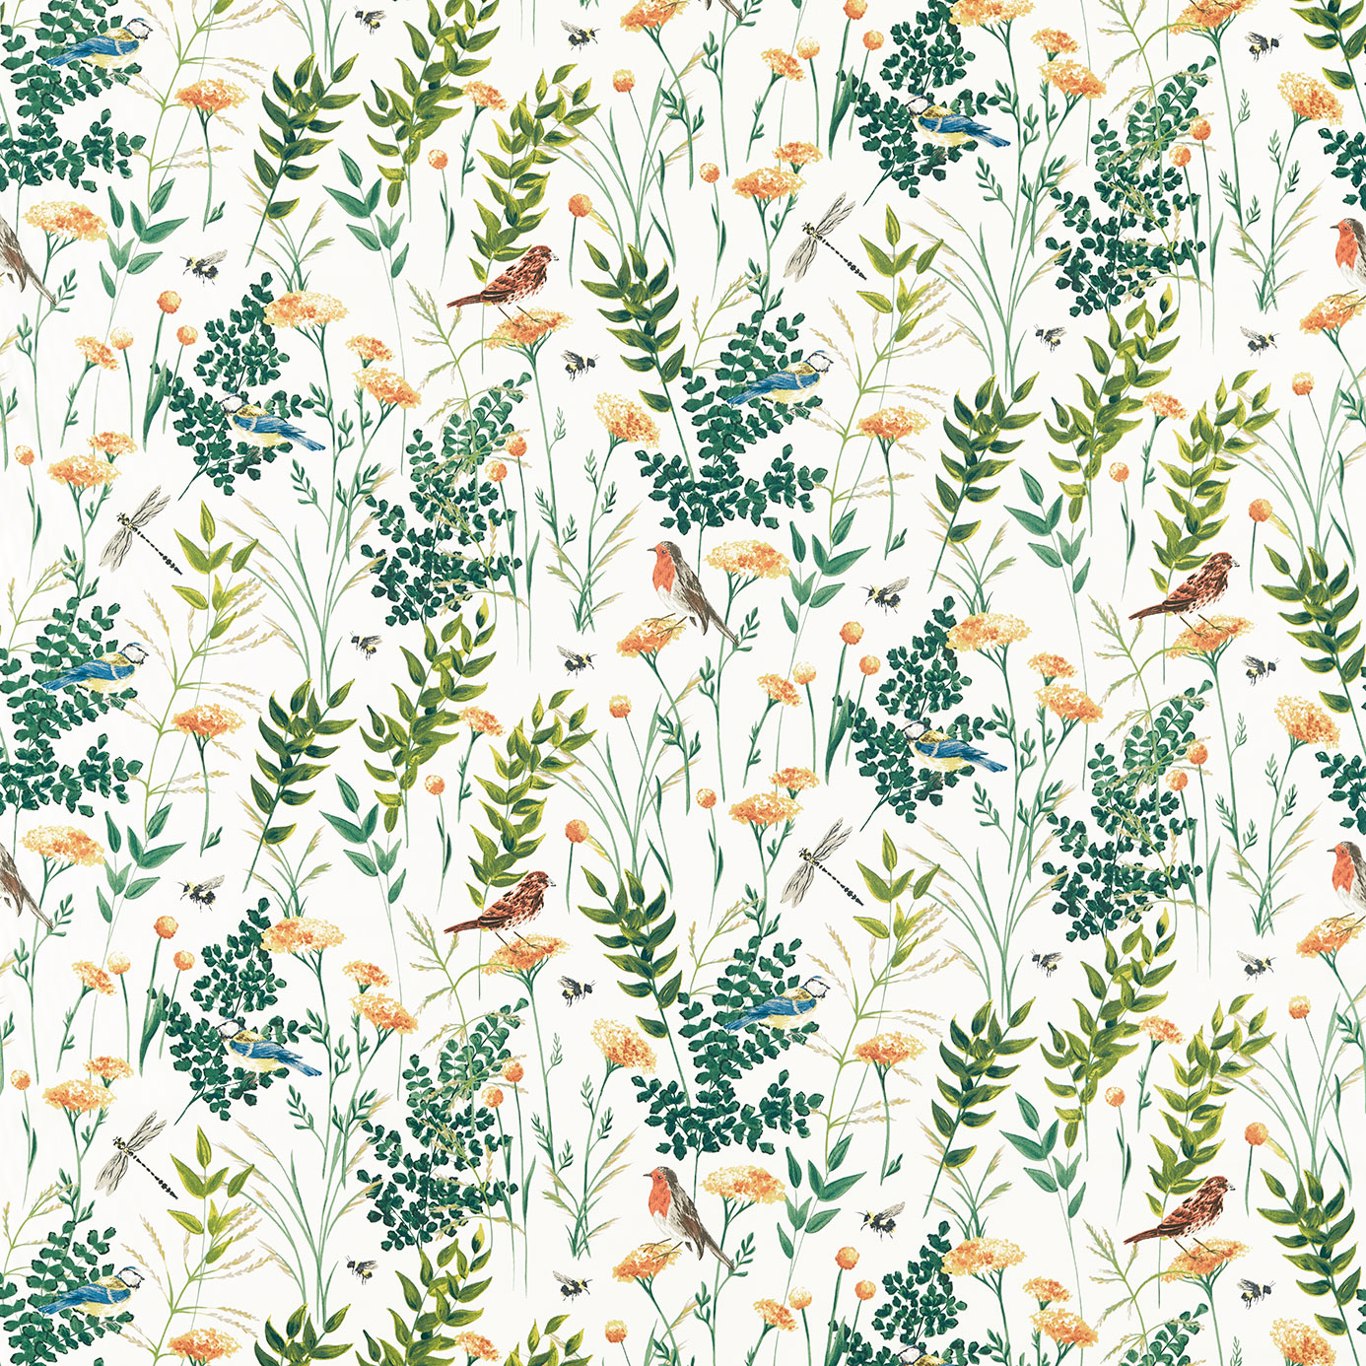 Gardenia Summer Fabric by STG